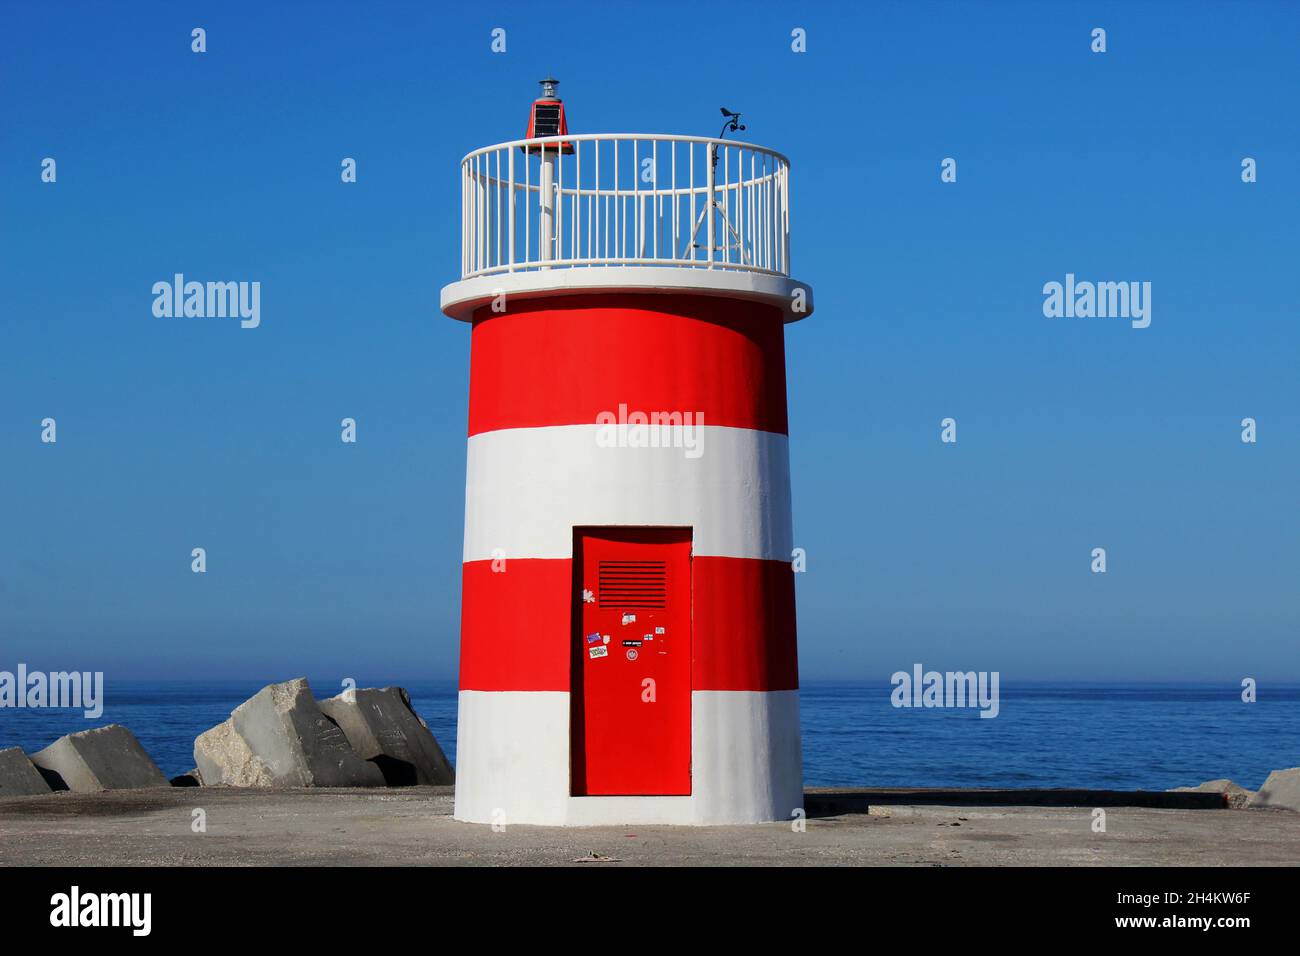 Der rot weiß gestreifte Leuchtturm auf dem nördlichen Steg am Strand von Nazare, Portugal. Portugiesische Bezeichnung: Farol Nazaré Pontão Norte. Foto de stock